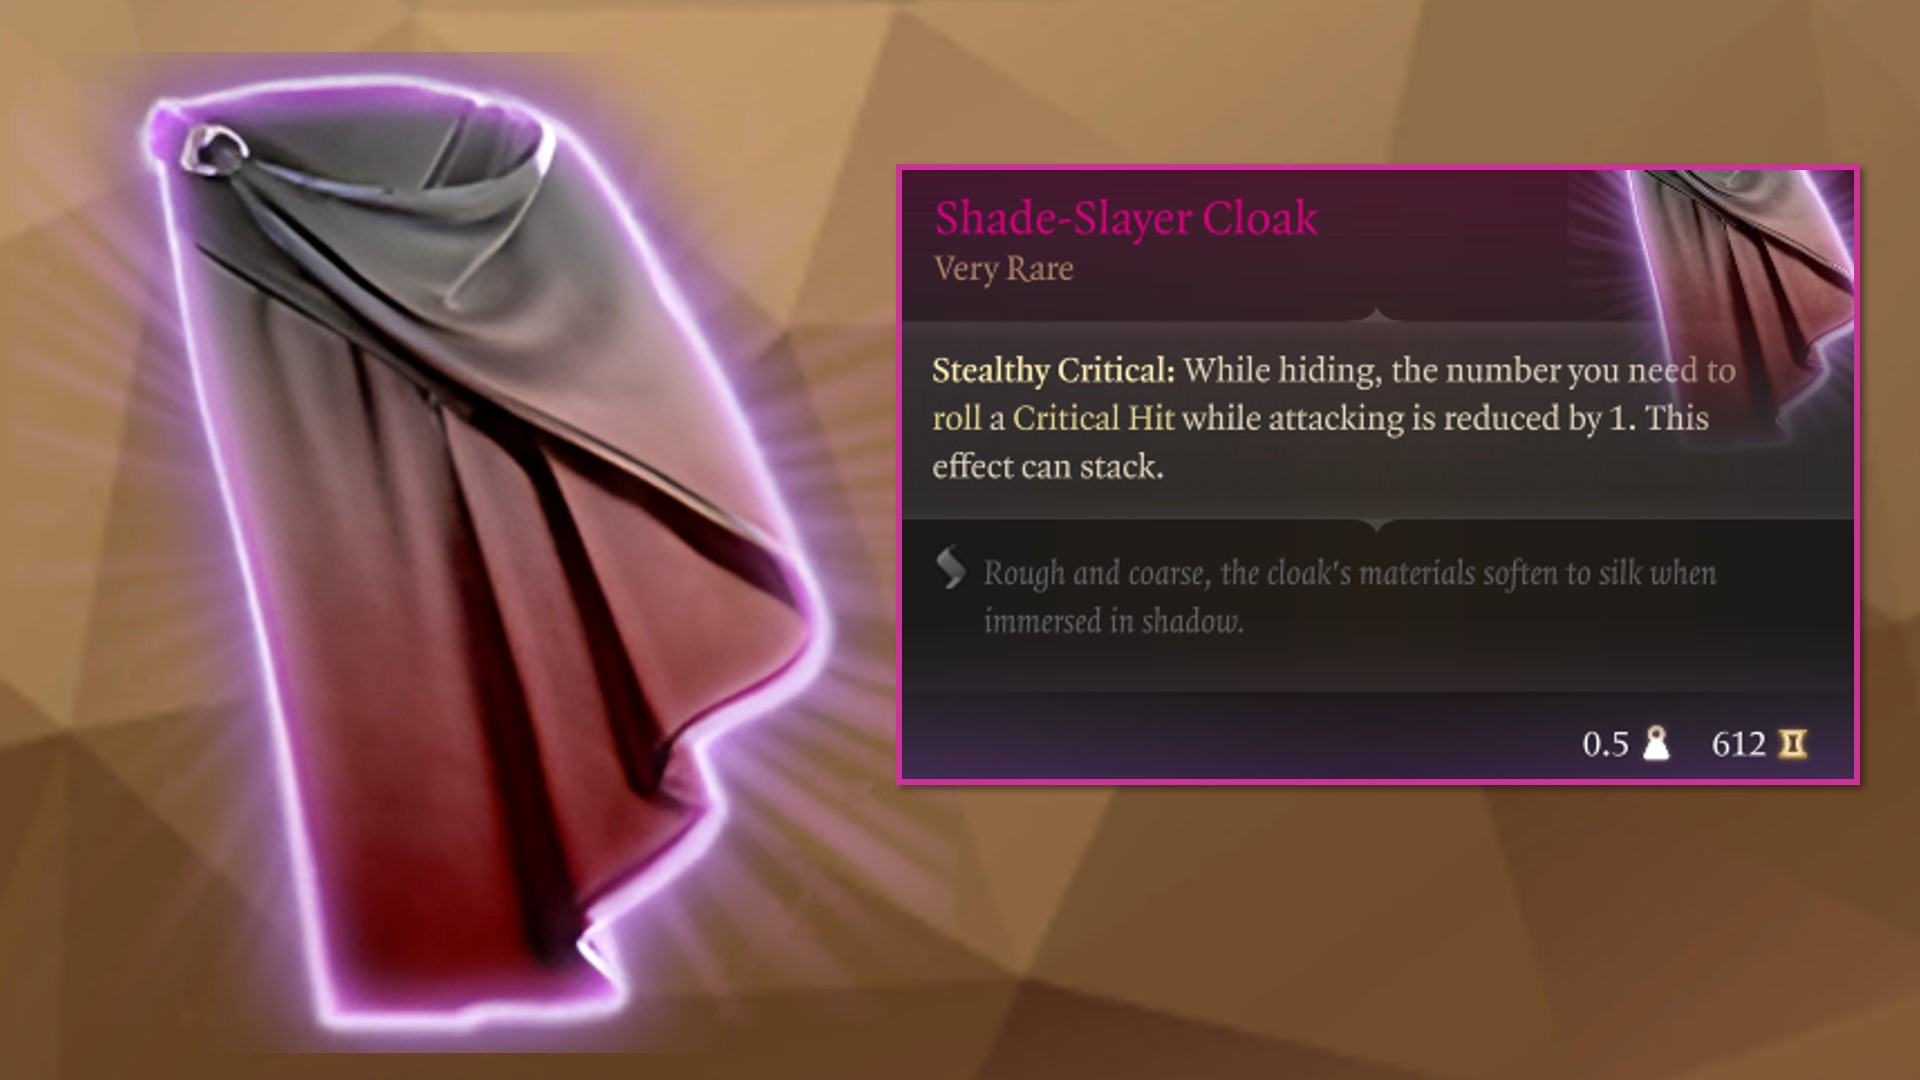 BG3 - How to Get Shade-Slayer Cloak